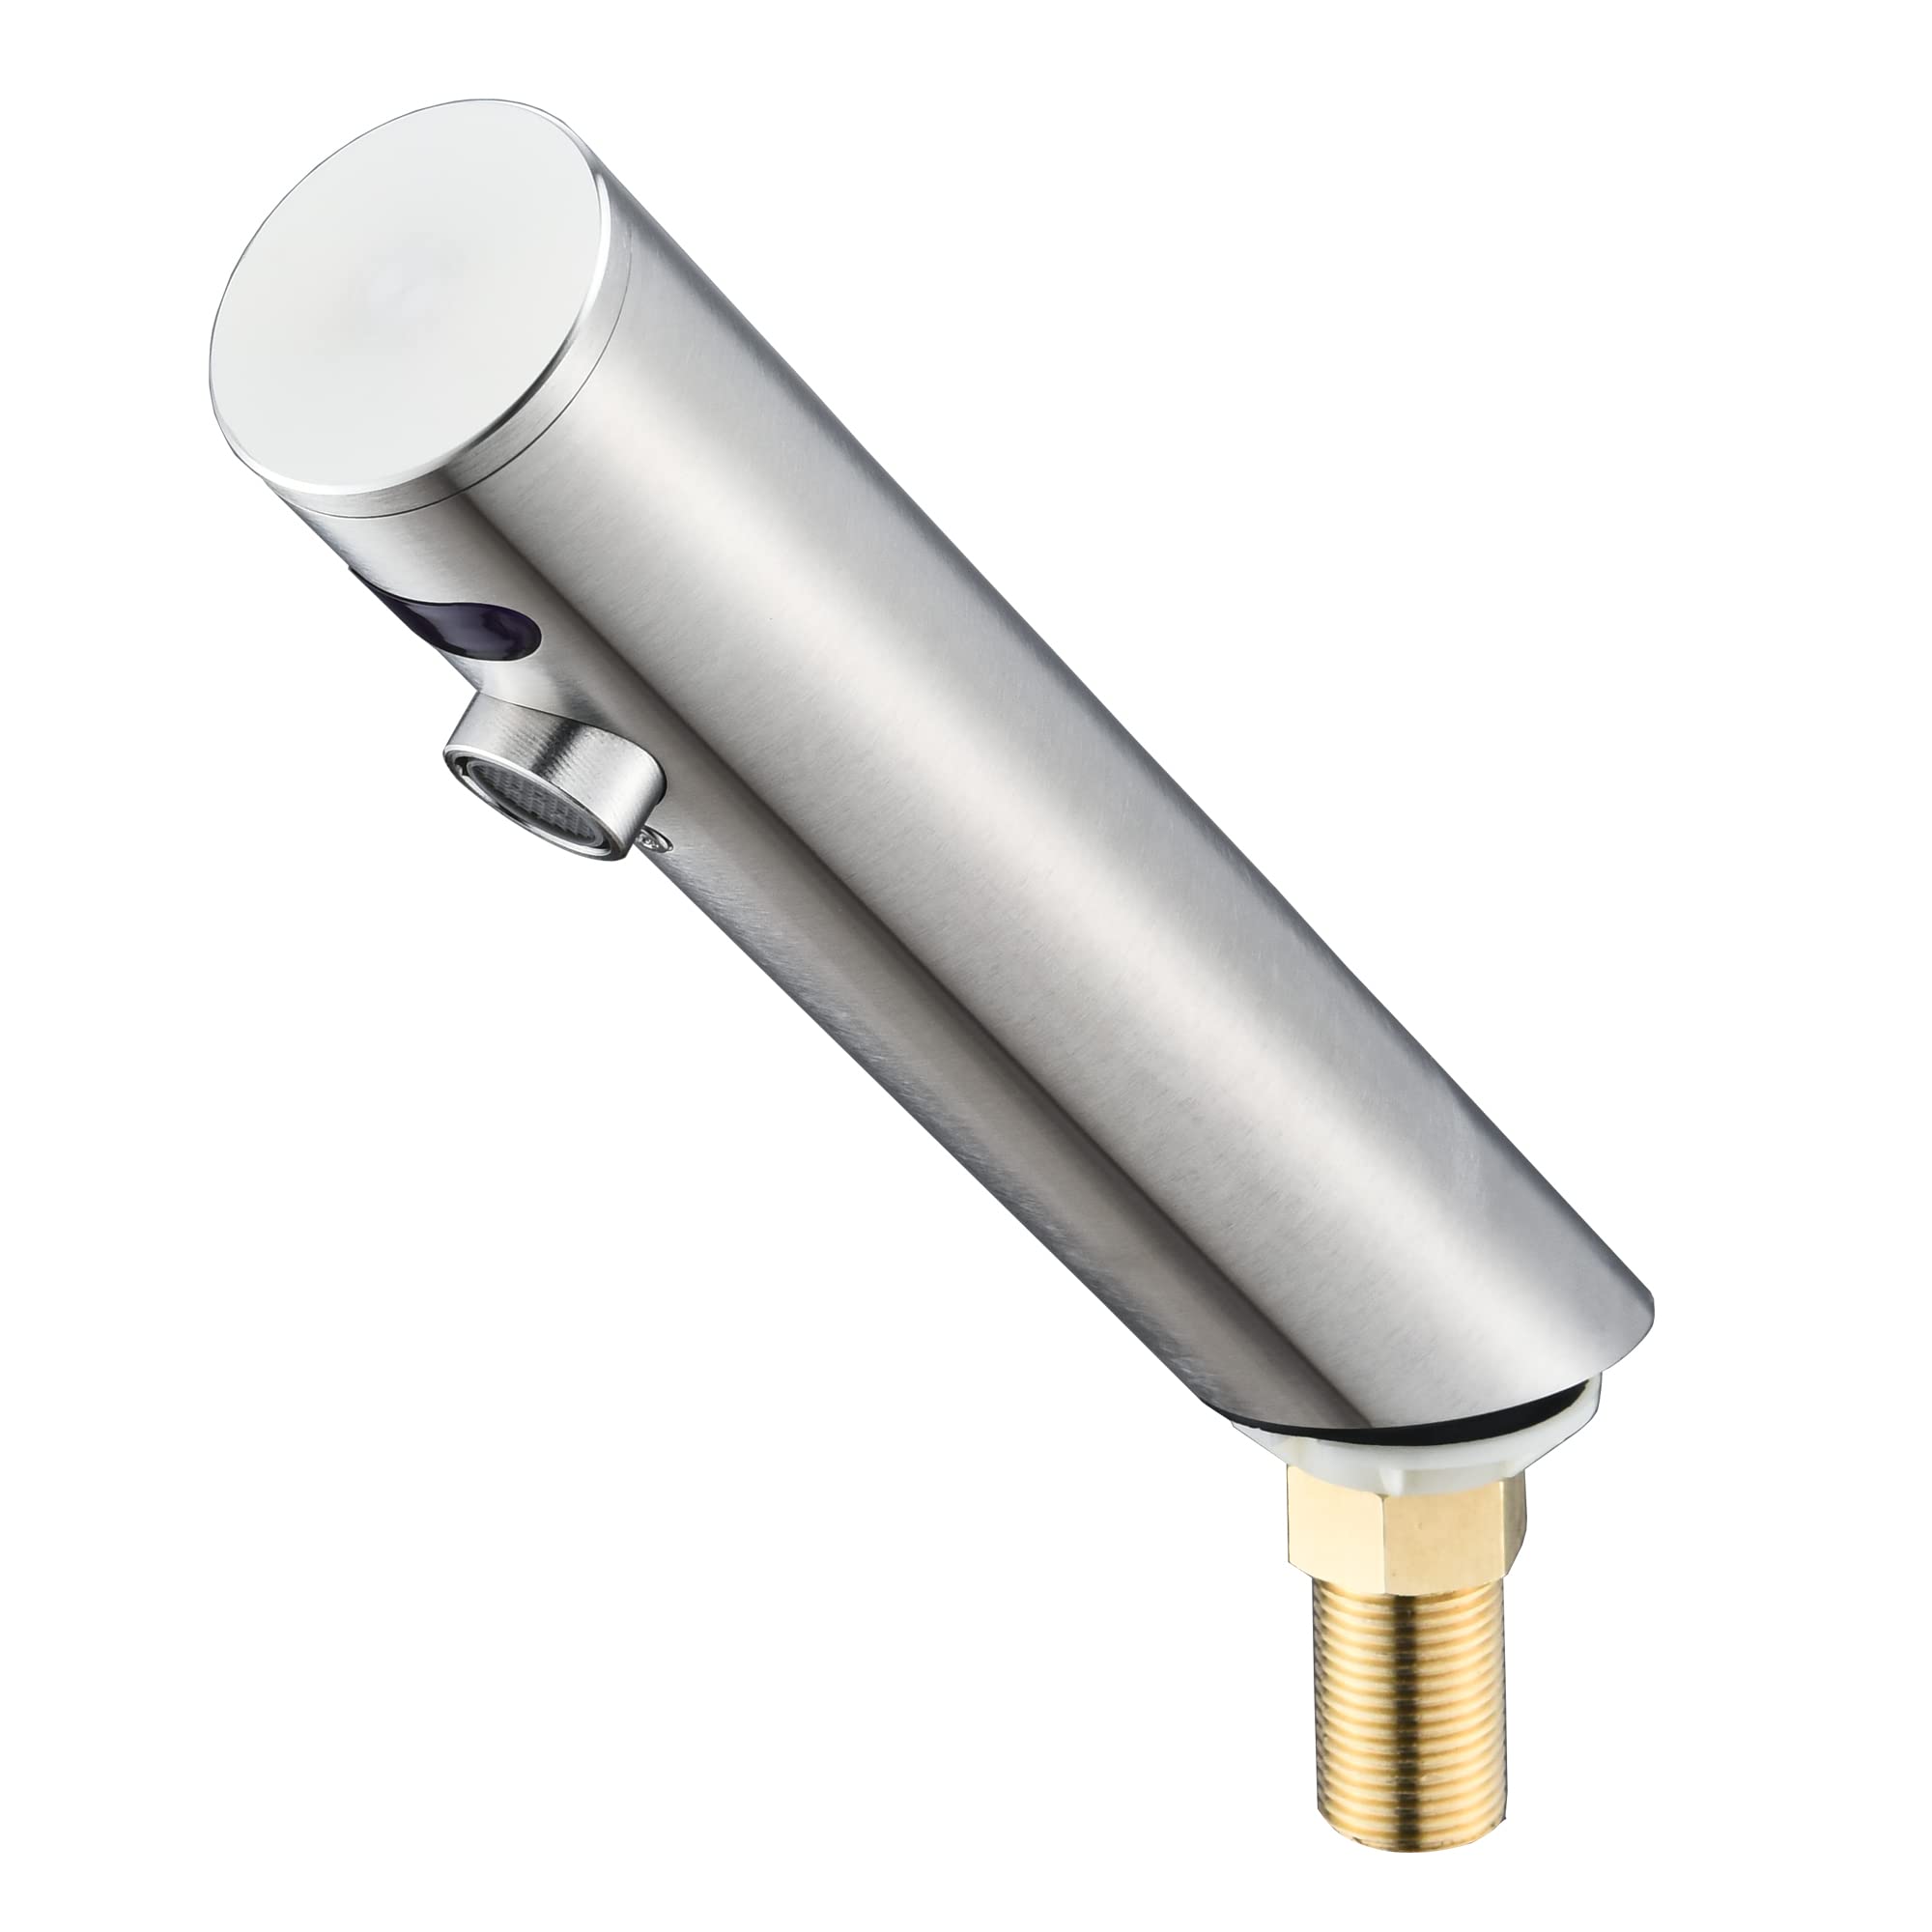 楽天abc通販NURISI 一体型自動水栓 センサー水栓 ヘッドセンサー吐出 自動蛇の口赤外線自動出水 標準コネクタG 1/2 inch電池の給電を調節することができます（電池は別途購入します。自分では持ちません） （GY8819）